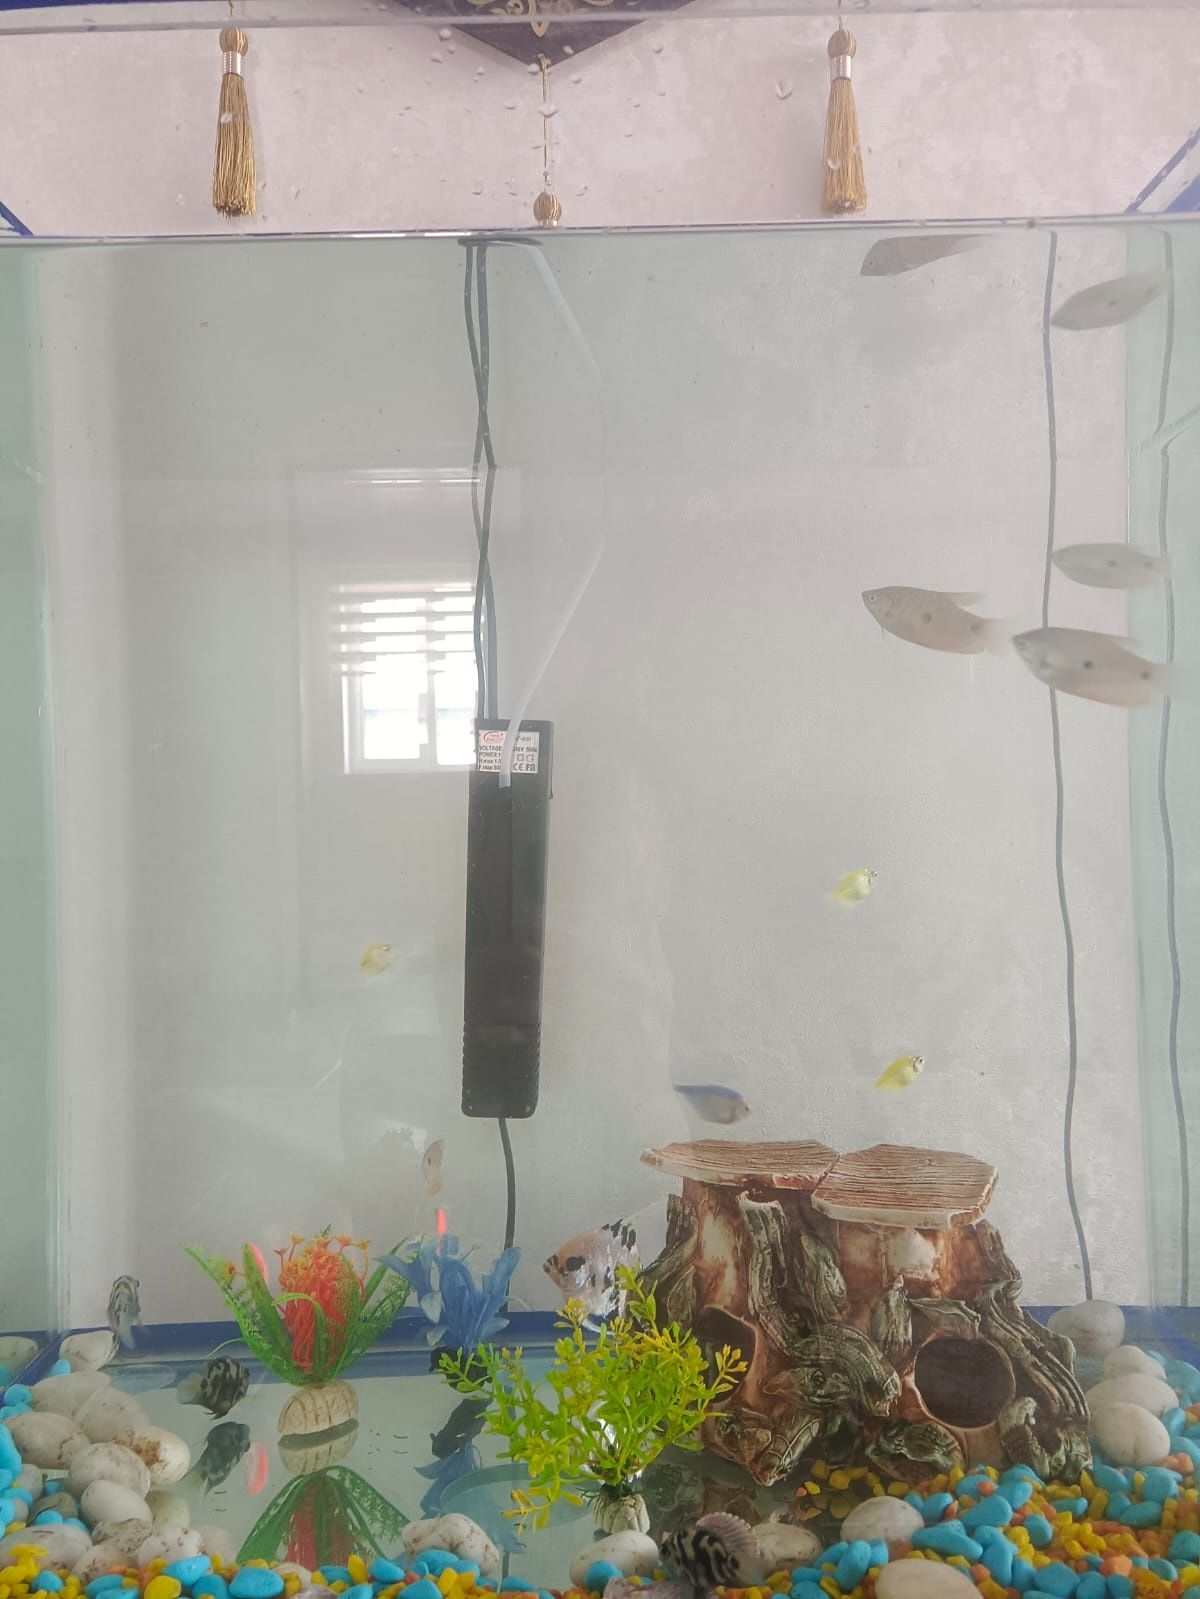 Аквариум с рыбками в наборе